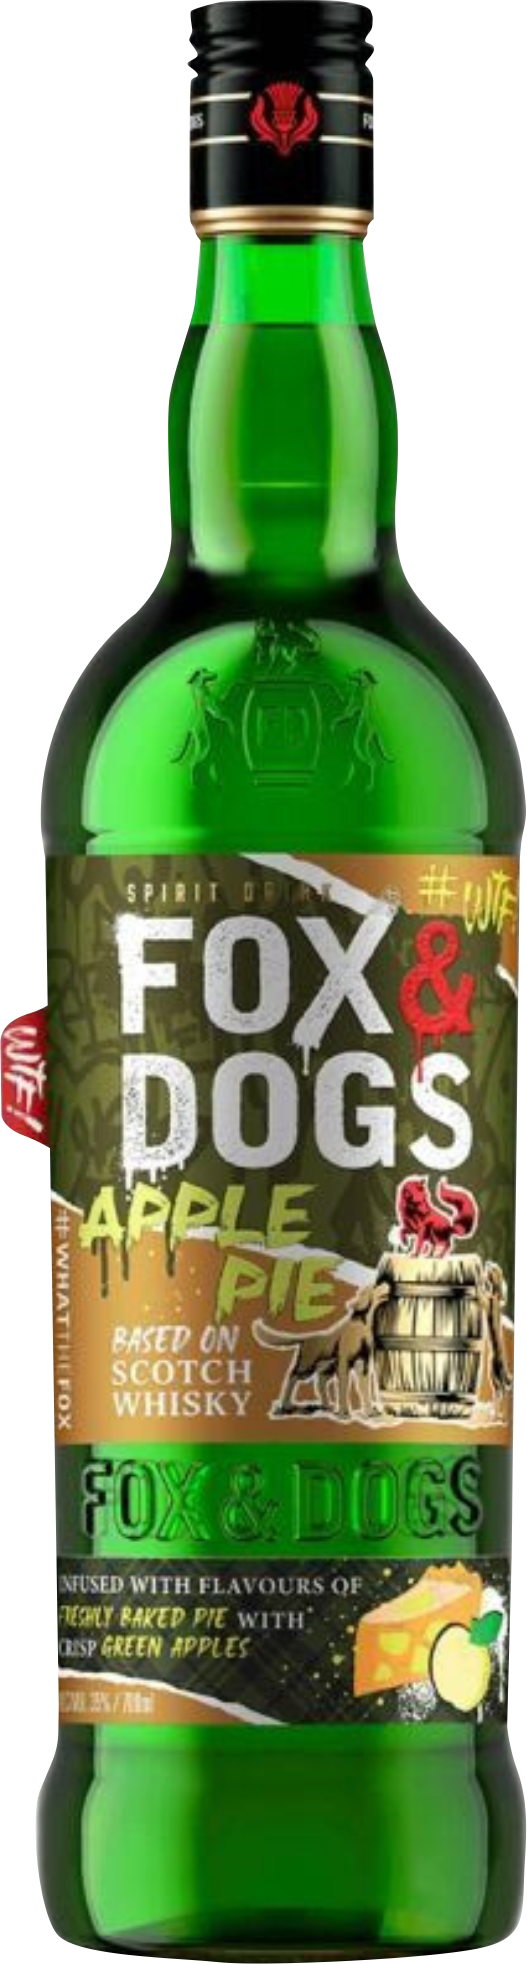 Напиток спиртной зерновой Фокс энд Догс со вкусом яблочного пирога 35% 0,7л (Россия)